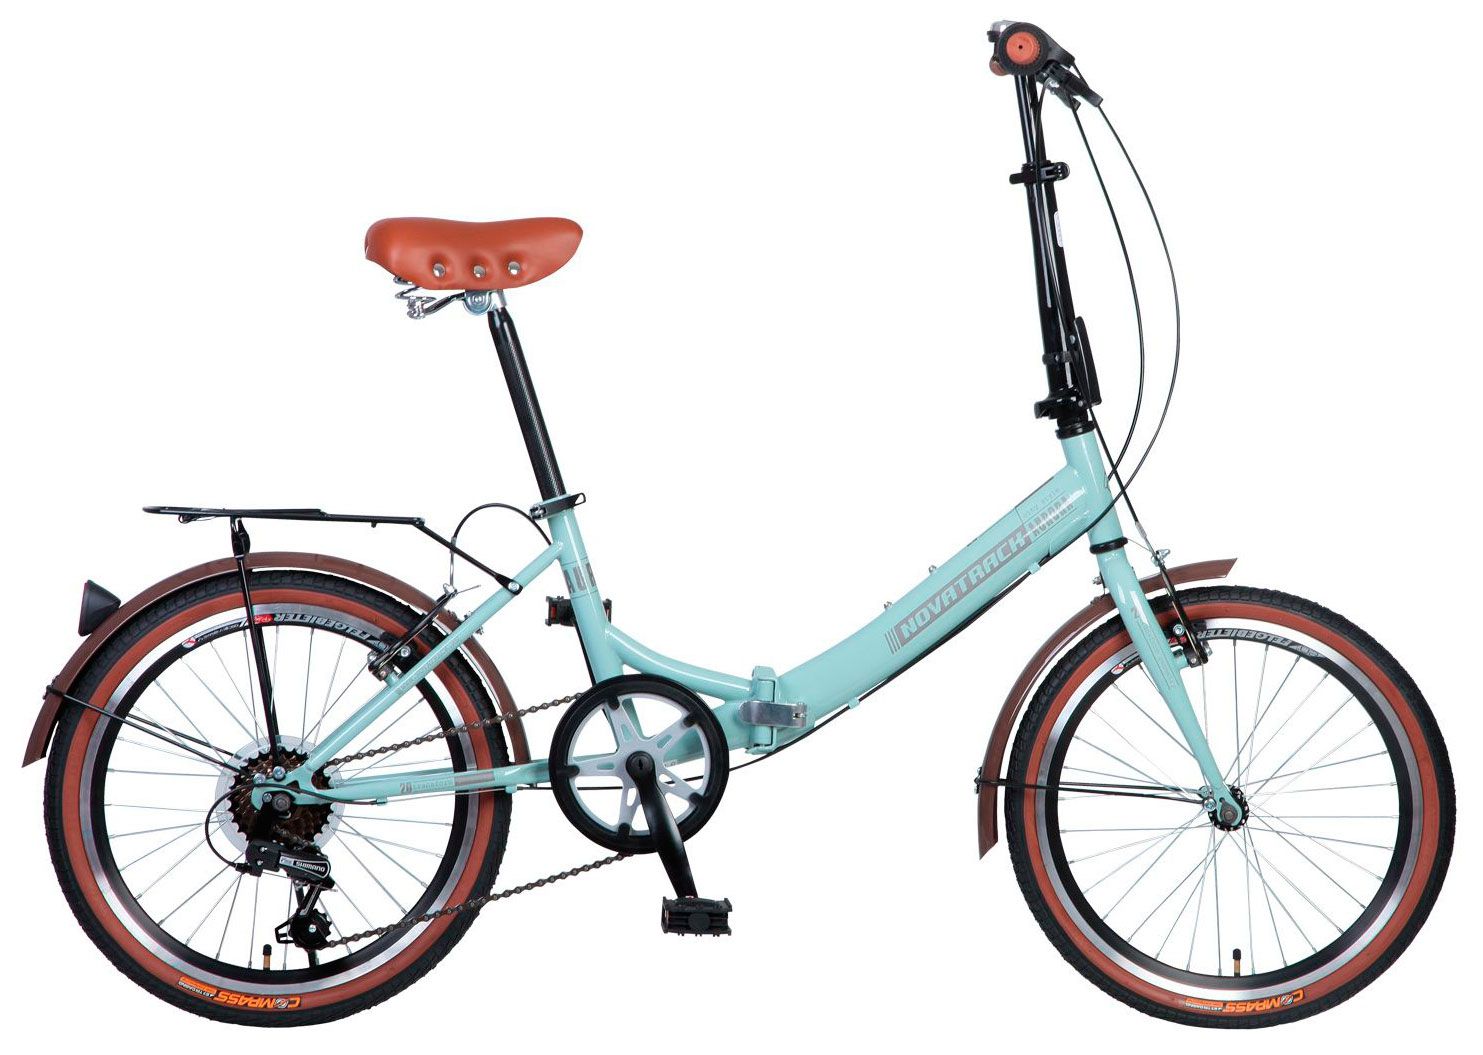  Отзывы о Складном велосипеде Novatrack Aurora 20 2015